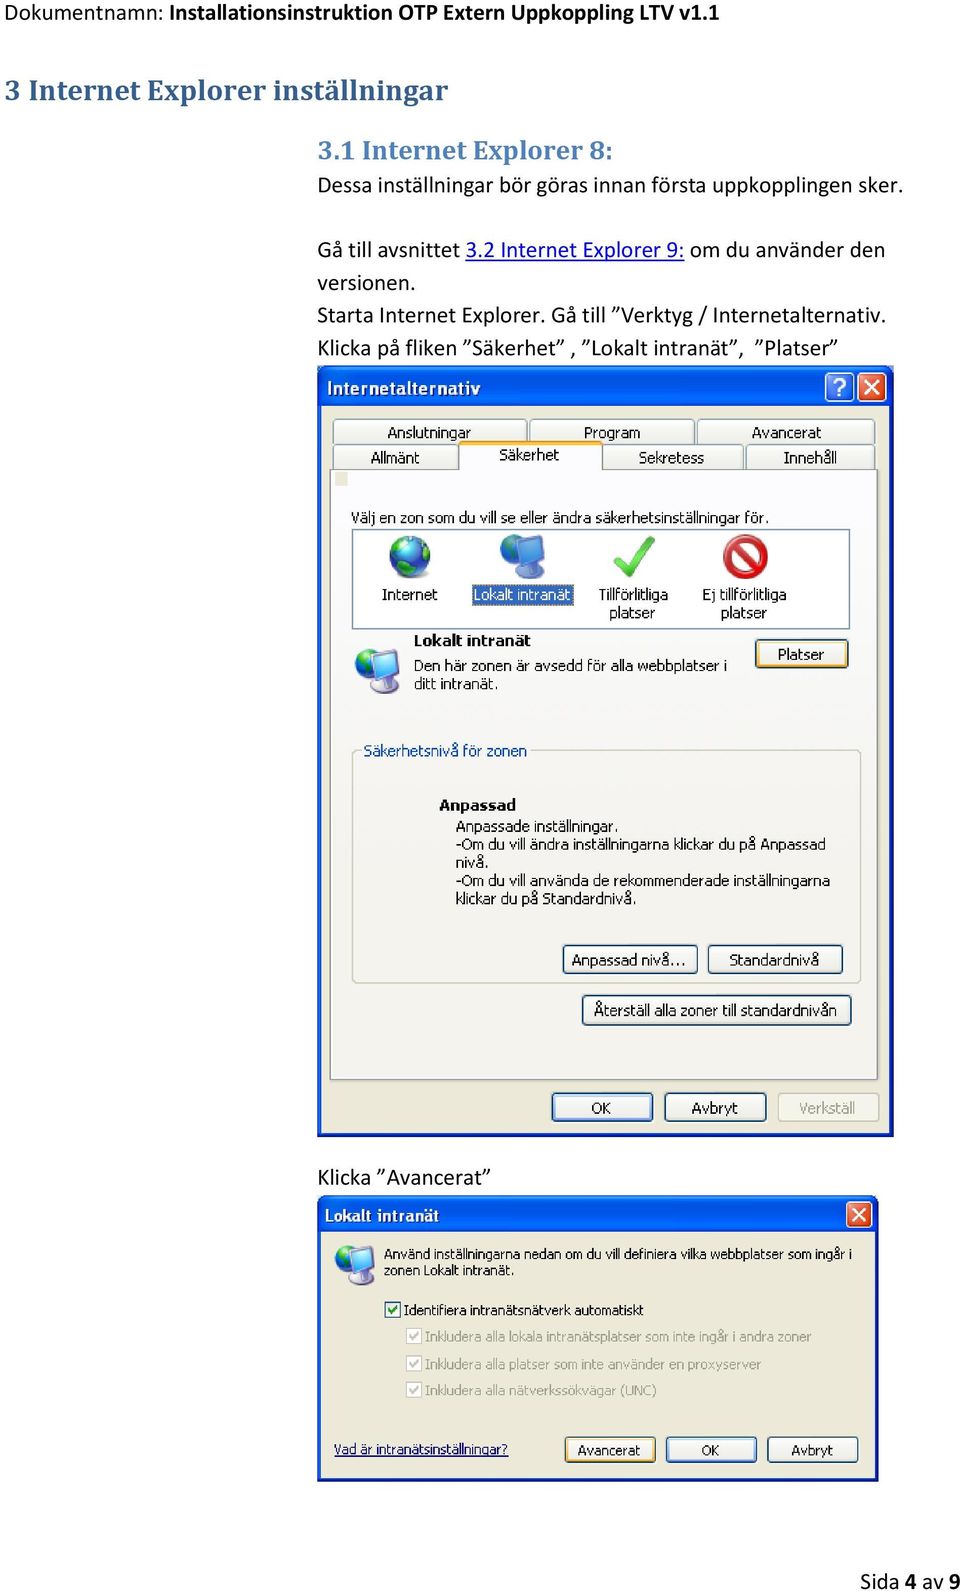 Gå till avsnittet 3.2 Internet Explorer 9: om du använder den versionen.